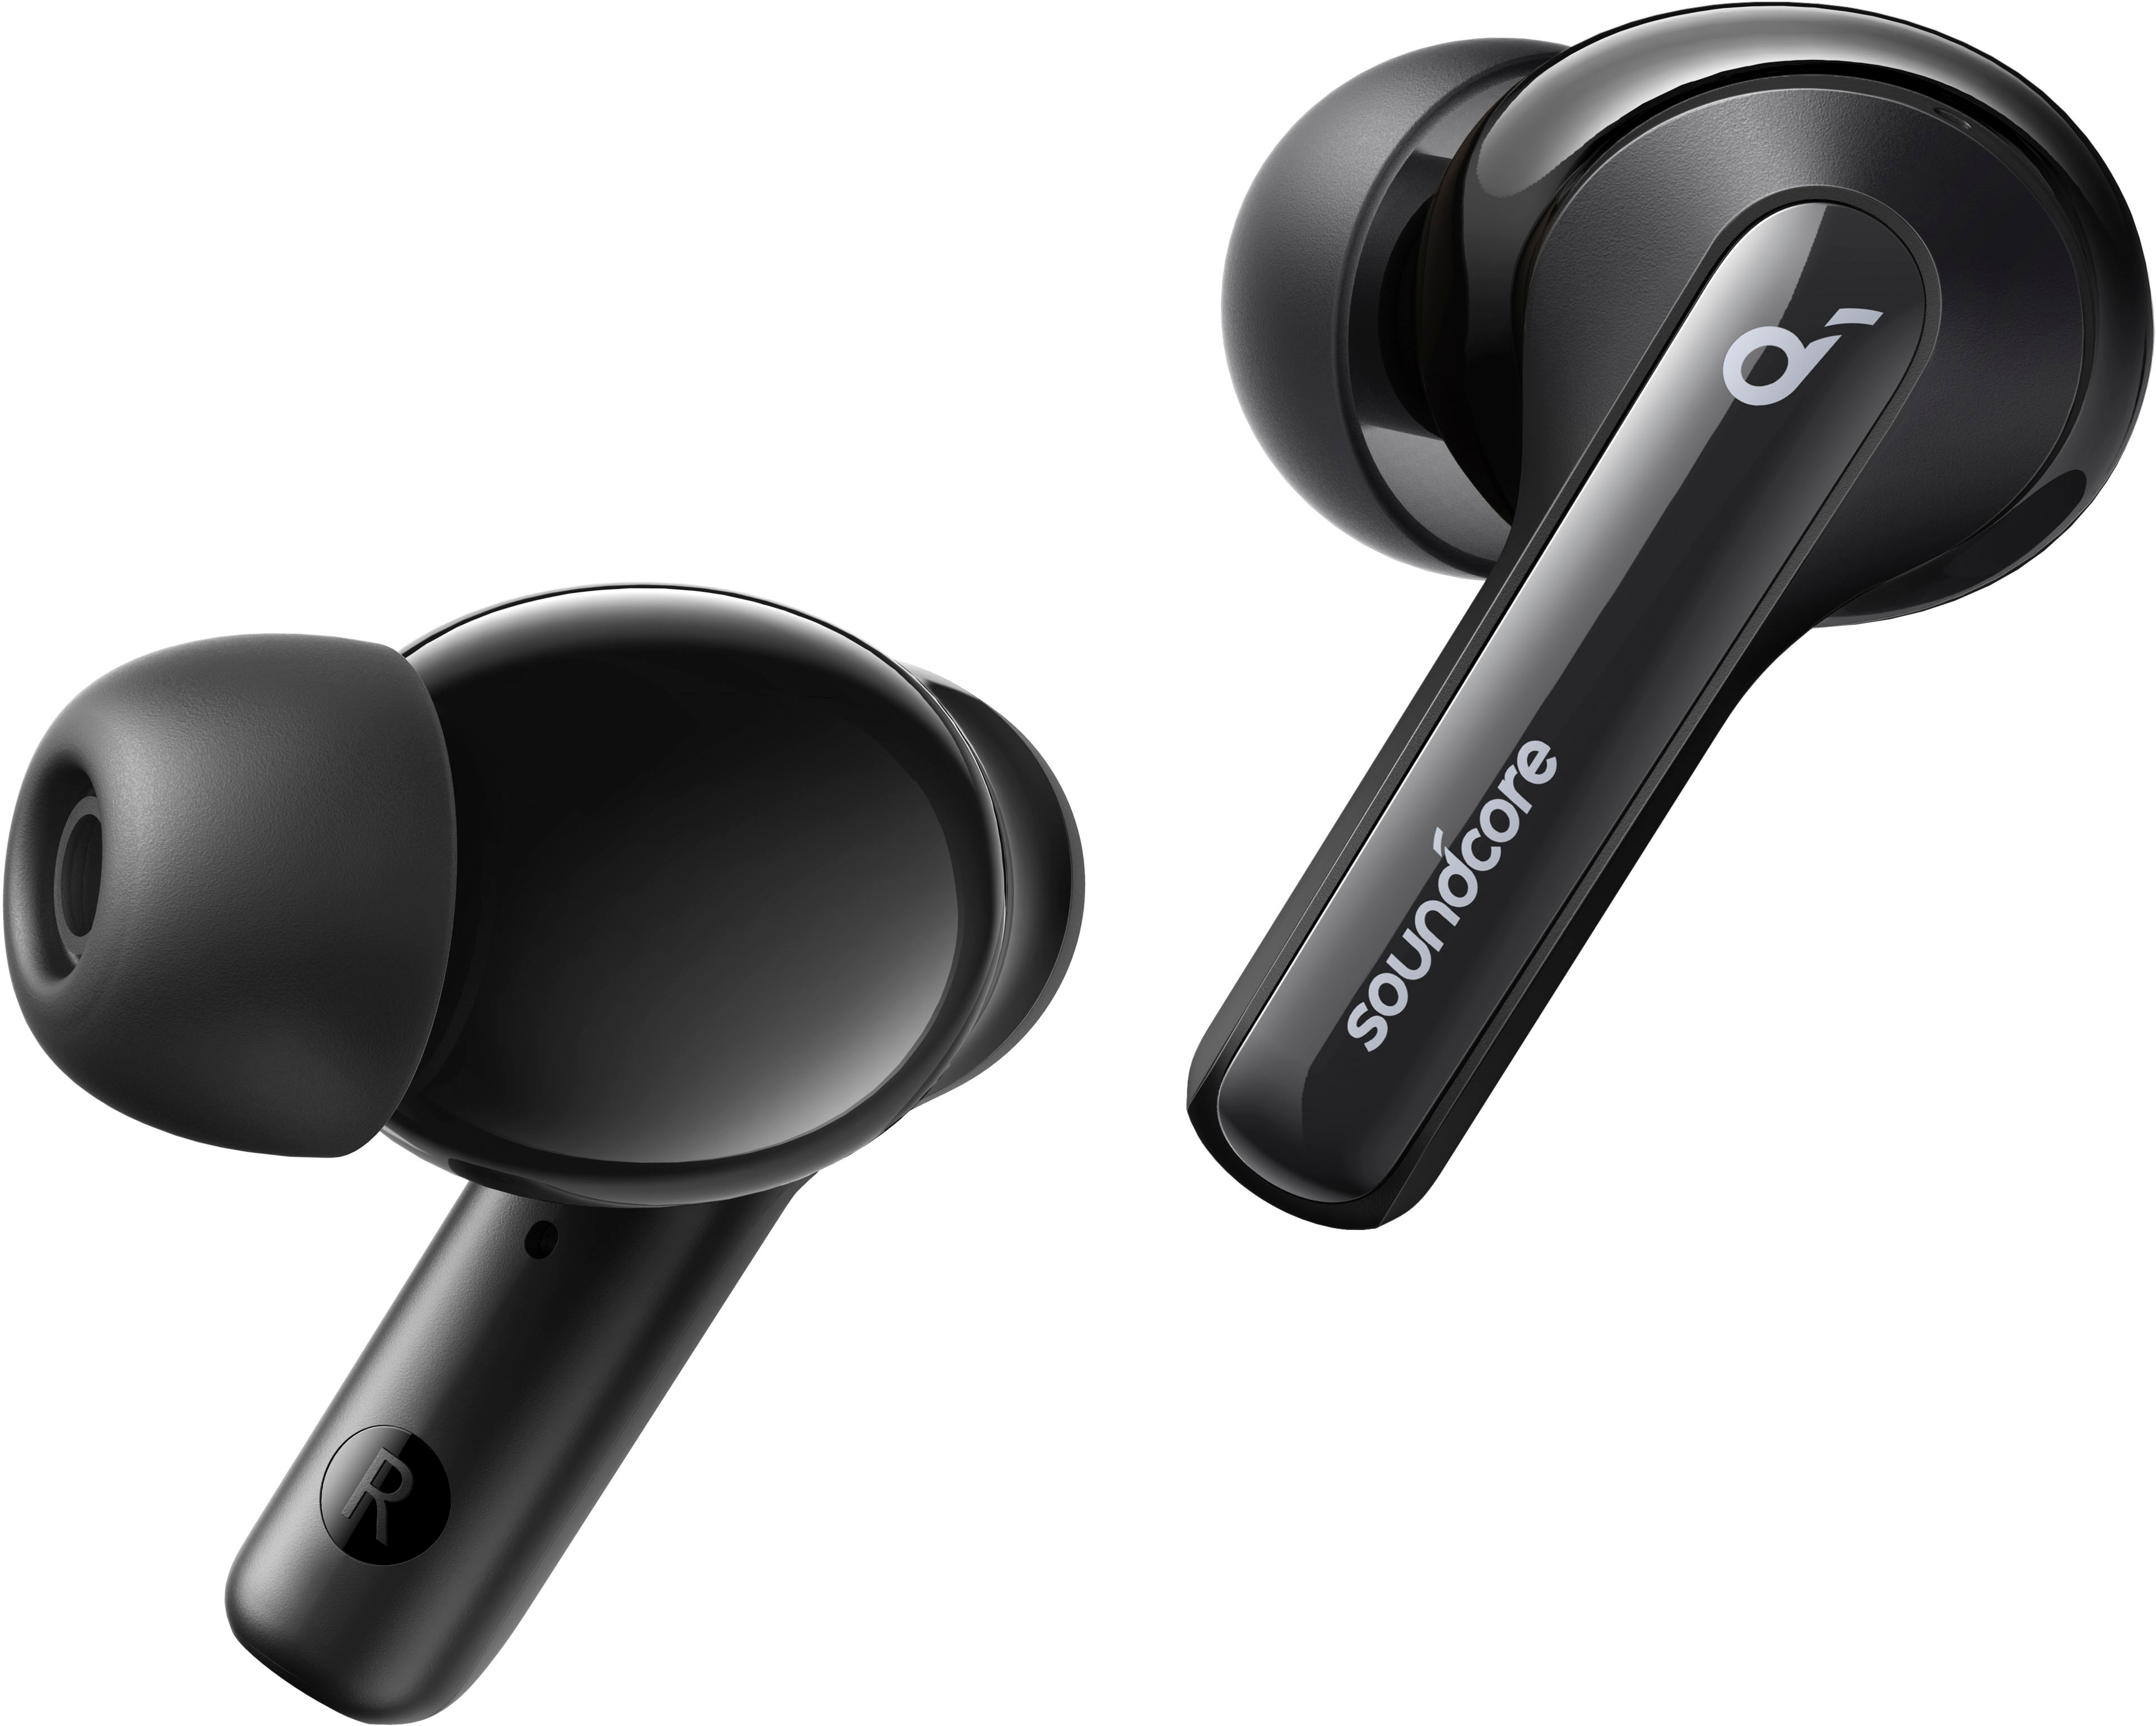 Noise Anker Headphones Buy True by Life Canceling Earbud - Black 3i Best Soundcore Wireless A3983Z11 Note